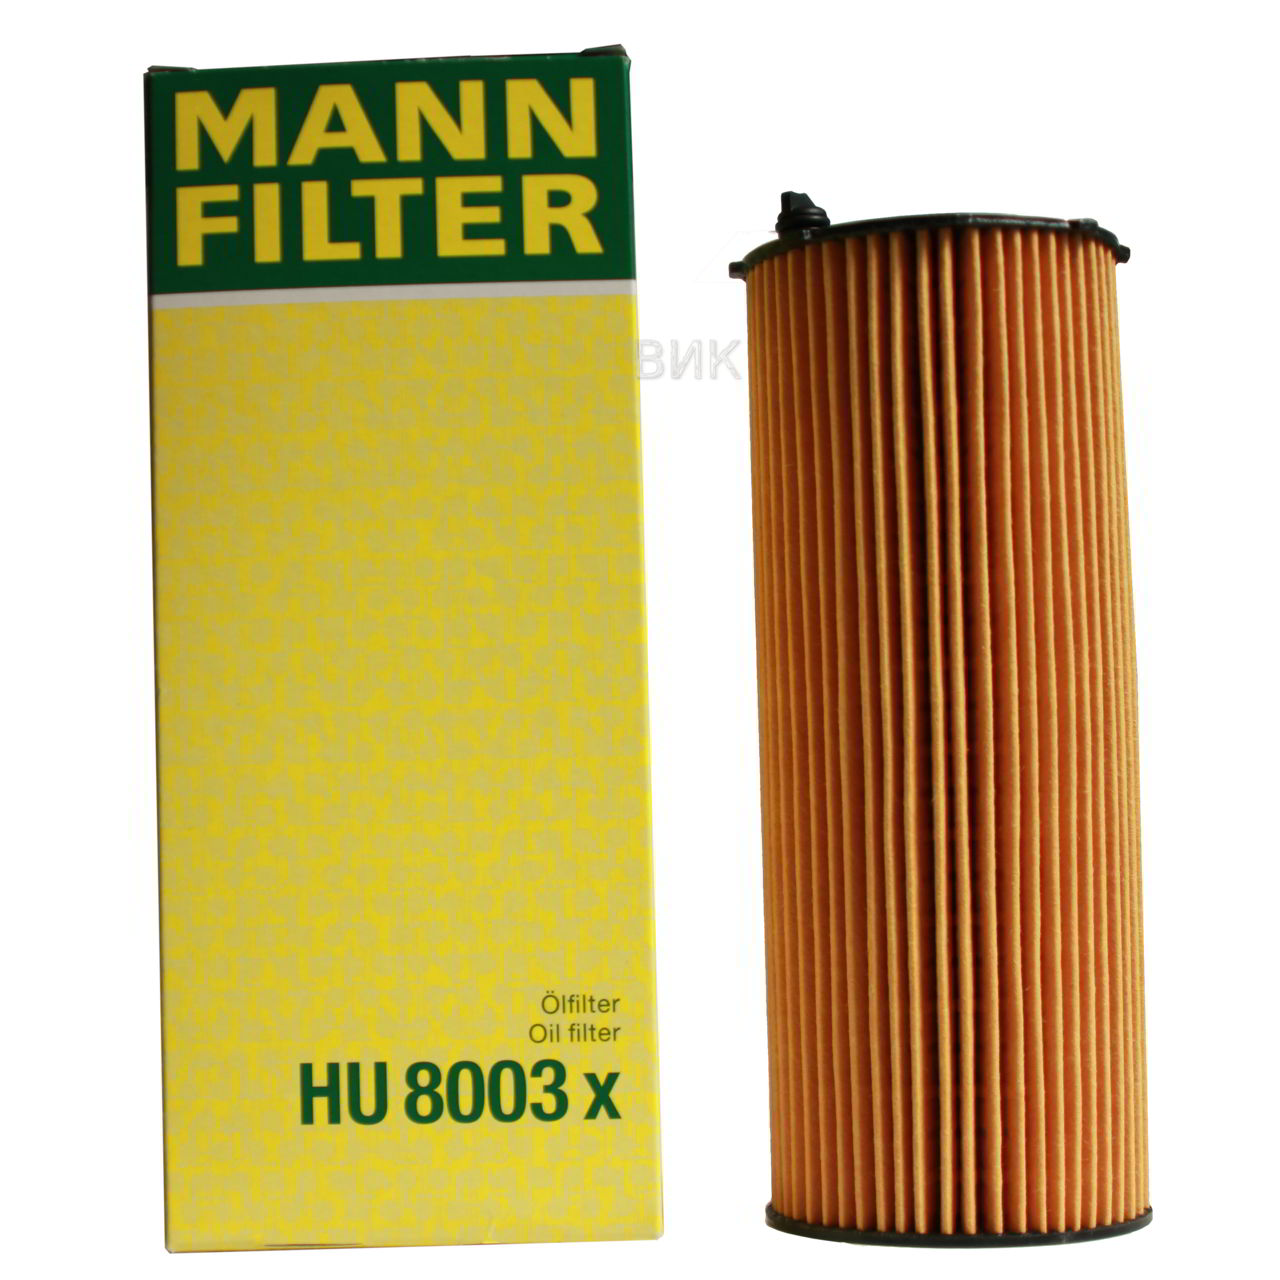 Масляный фильтр MANN-FILTER HU 8003 сменный элемент в виде вставки в масляную систему двигателя